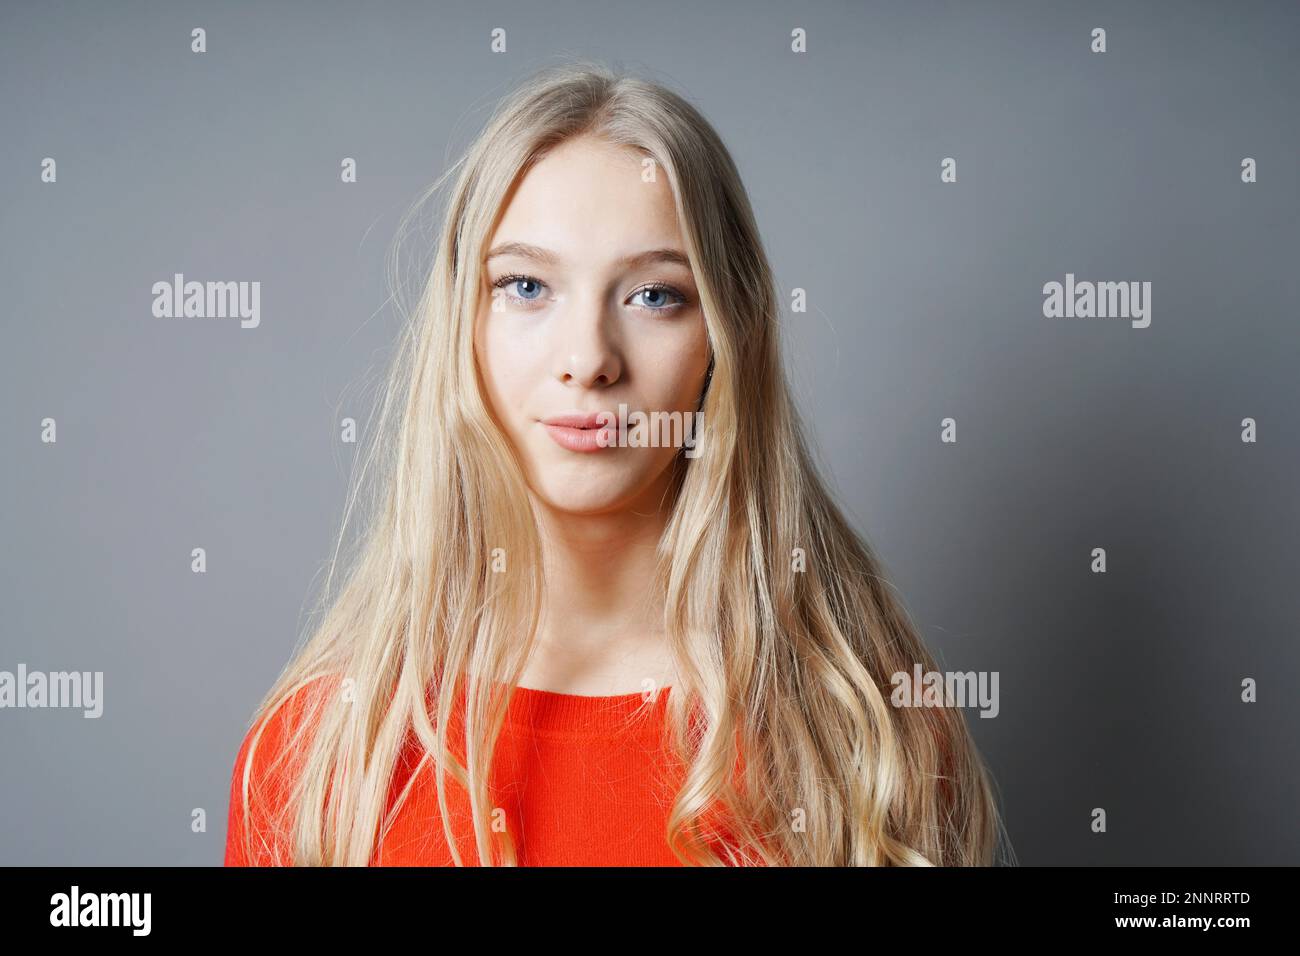 Giovane donna adolescente con lunghi capelli biondi, pelle pallida e gli occhi blu contro uno sfondo grigio con spazio di copia Foto Stock